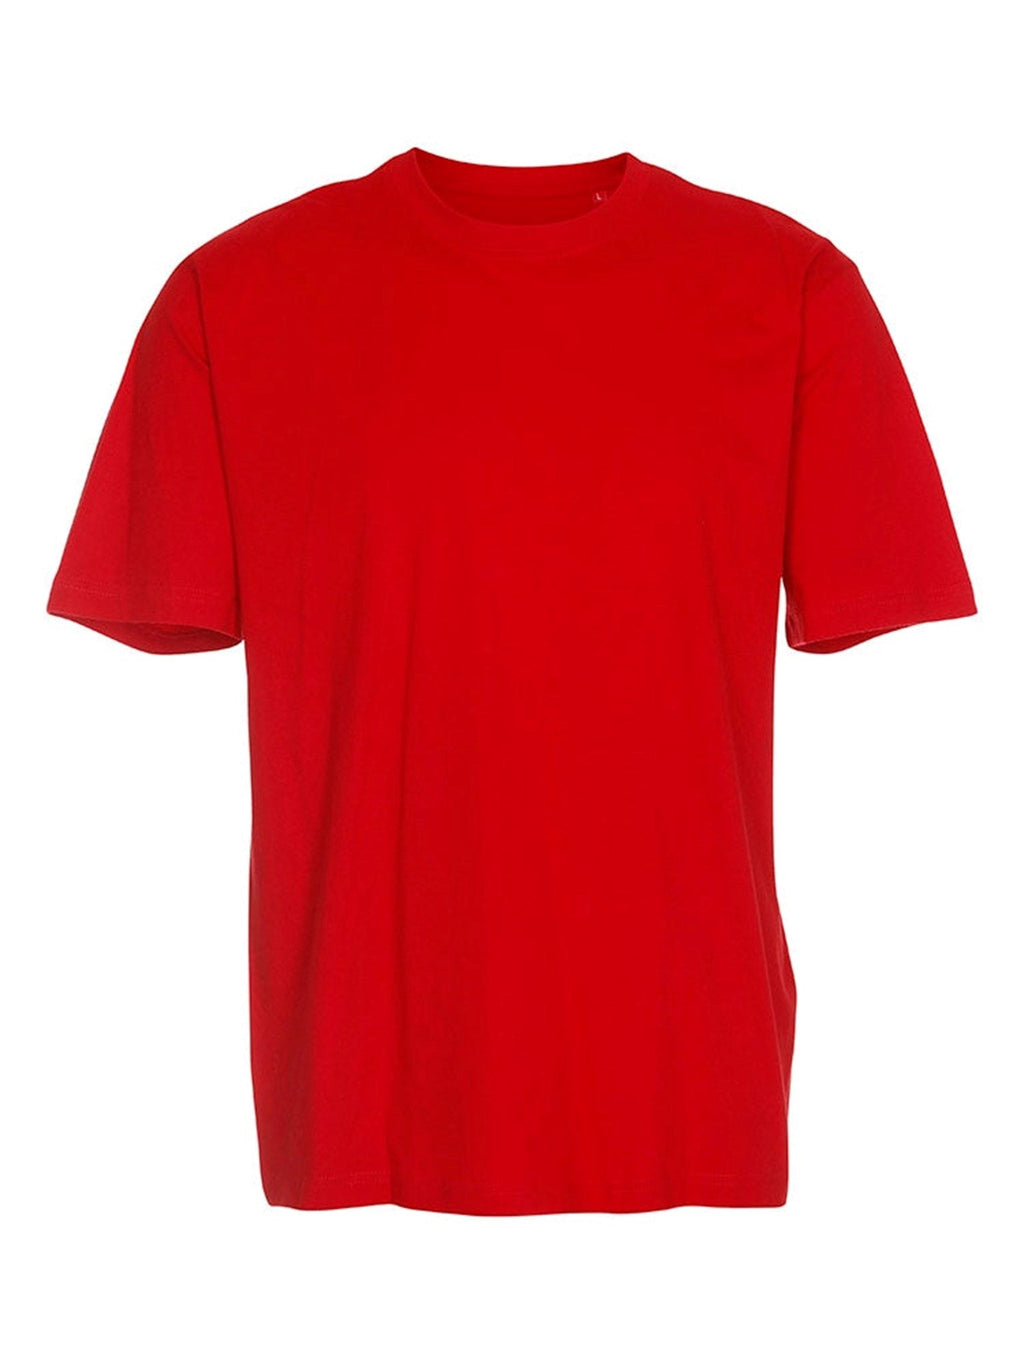 超大T恤 - 红色